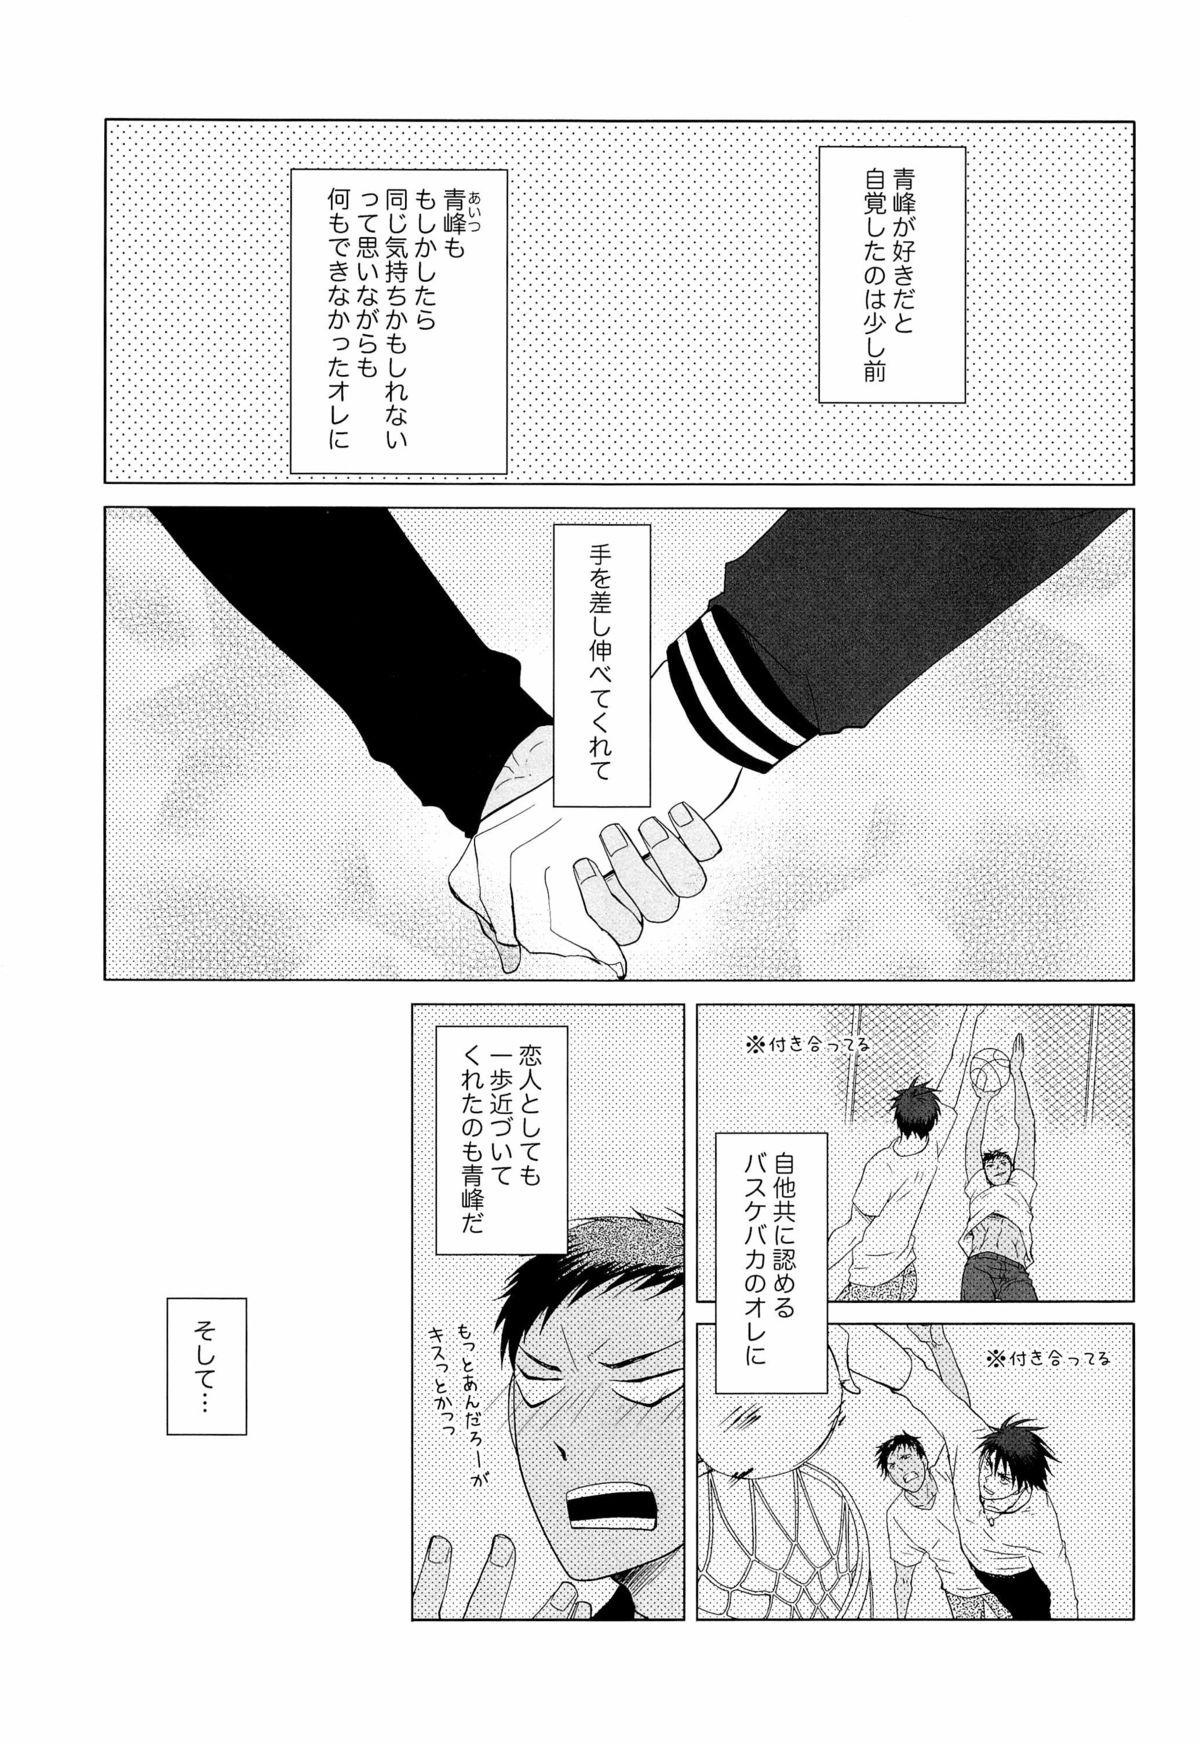 One あおみねと付き合ってる、ます。 - Kuroko no basuke Gay Facial - Page 5